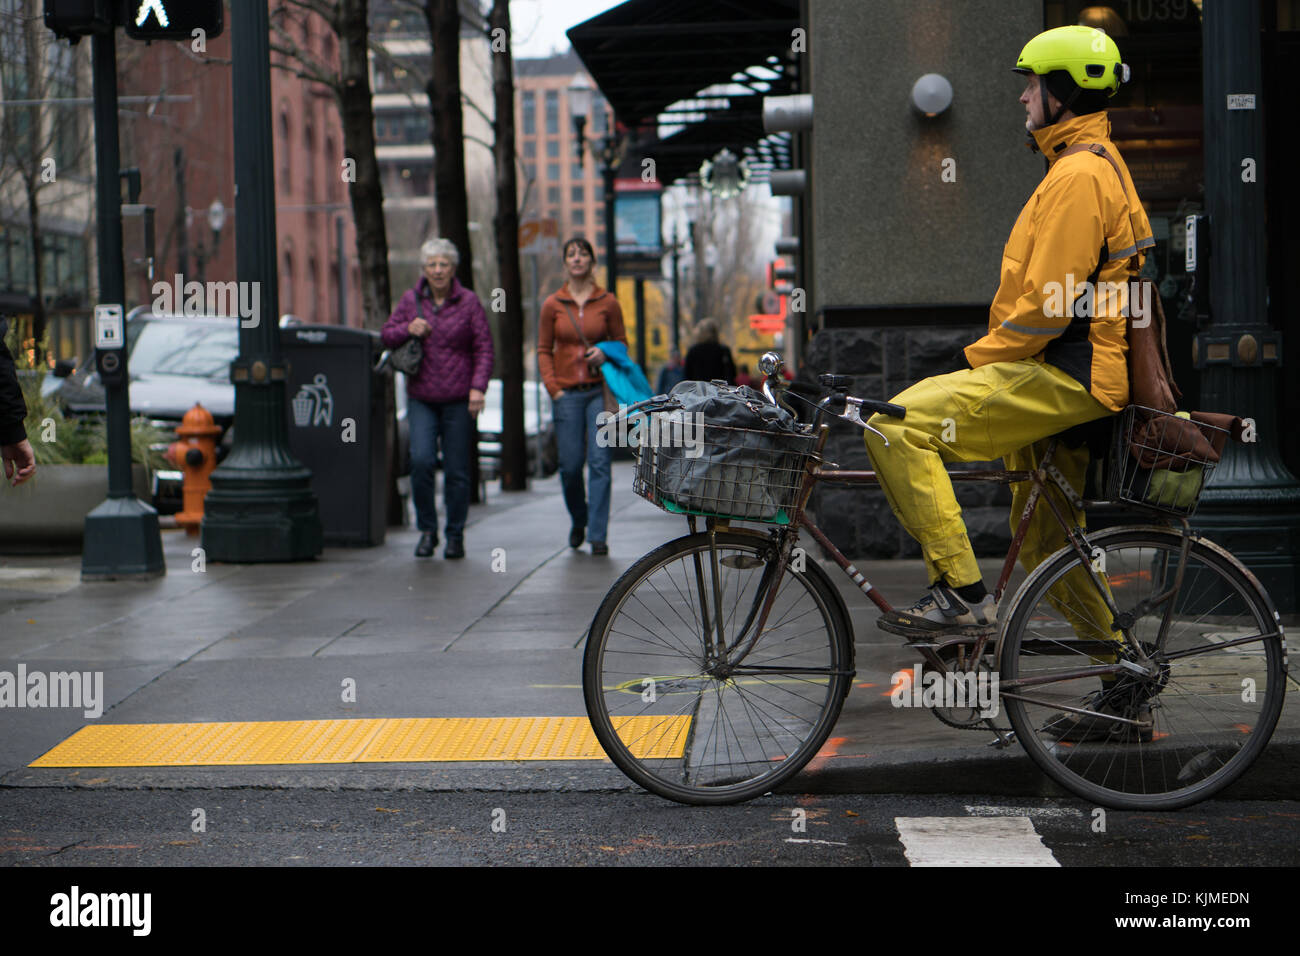 22 novembre 2017 - Portland OU. Un homme est assis sur un vieux vélo sale avec des paniers holding sacs, portant des vêtements de pluie vélo jaune en milieu urbain. Banque D'Images